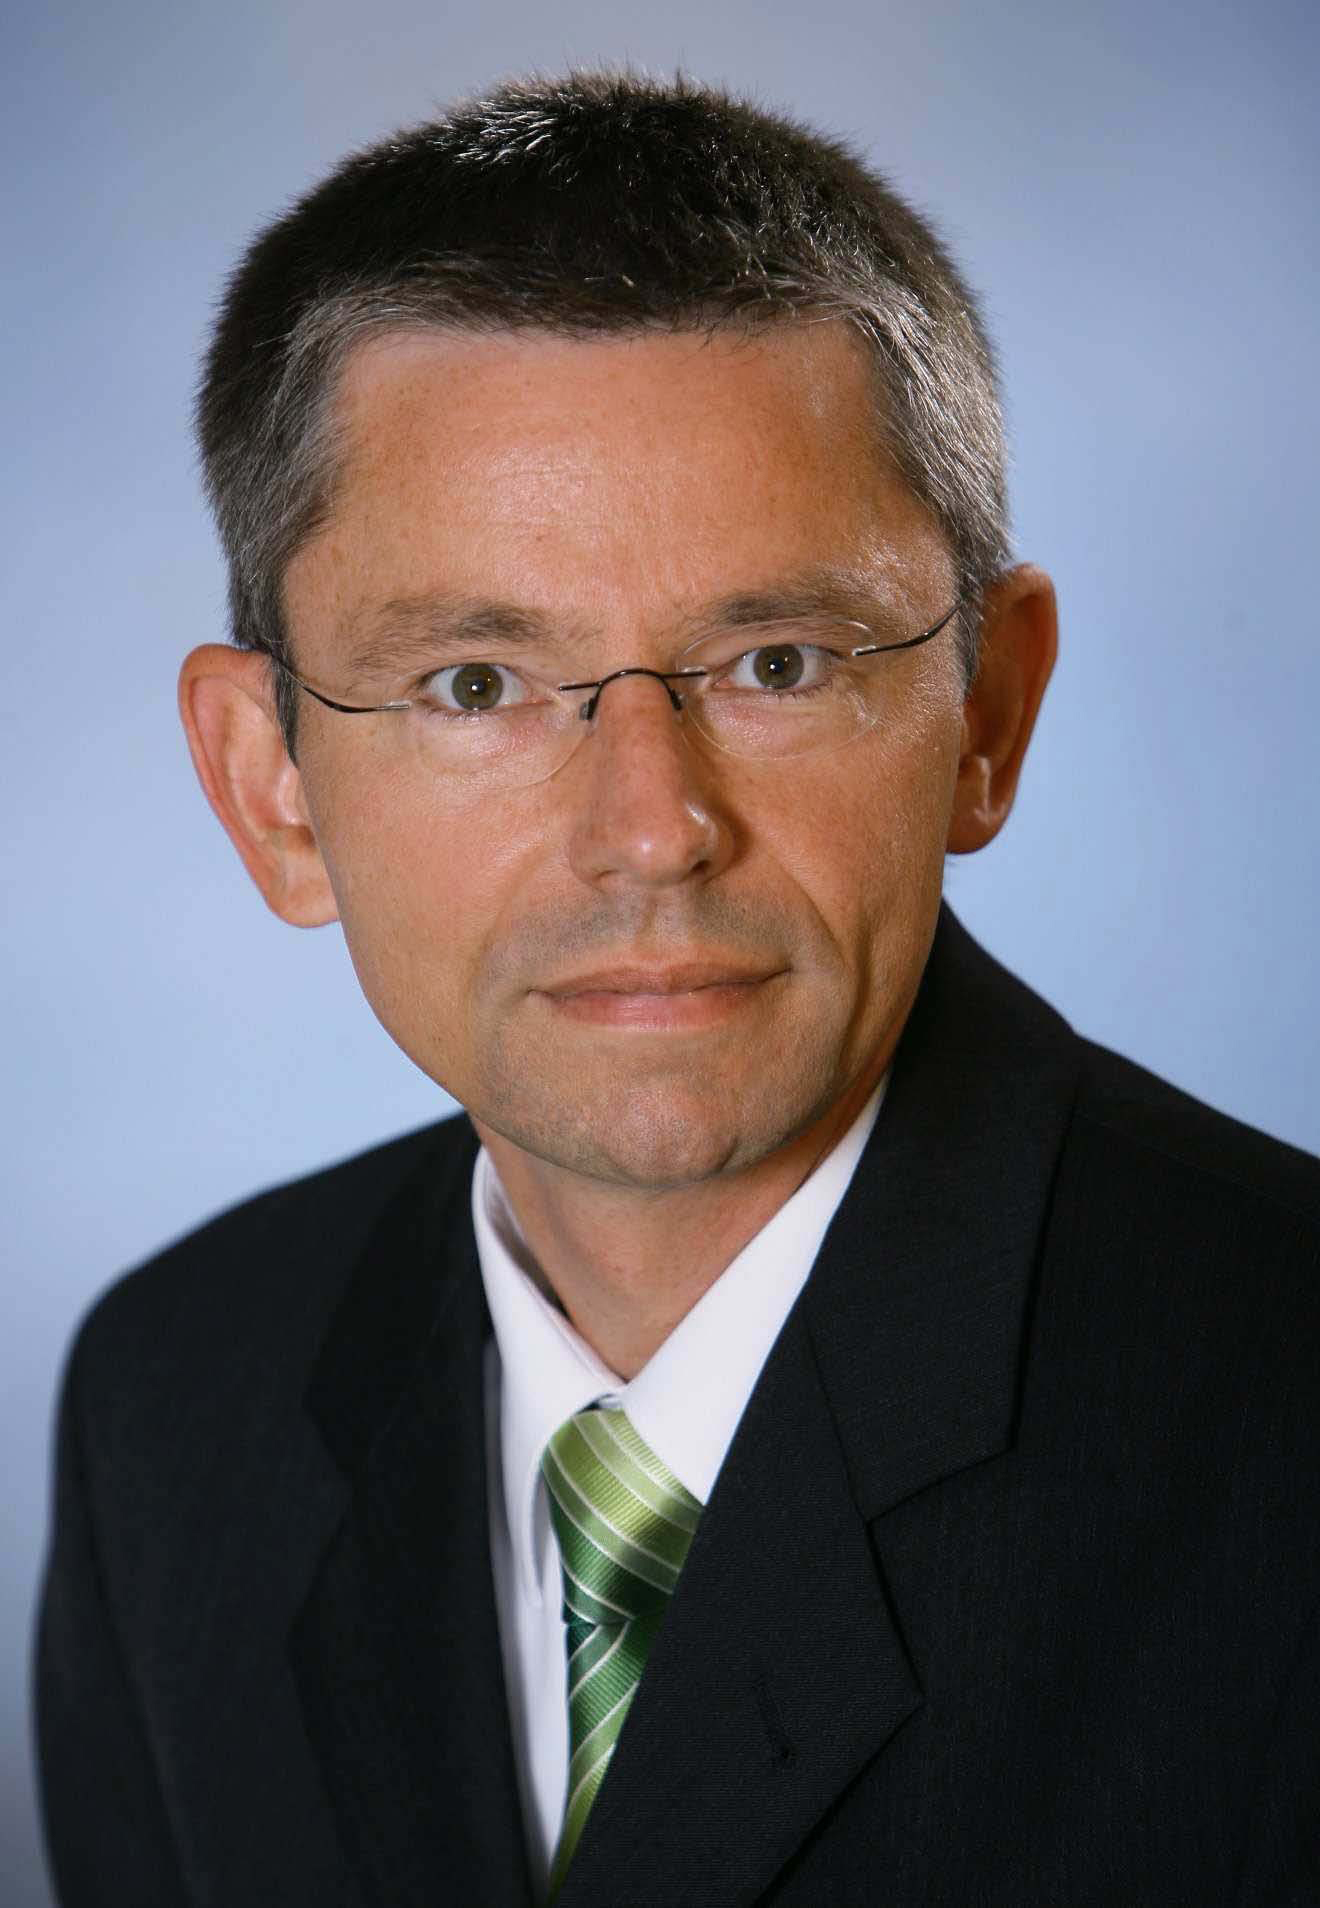 Peter Kraus